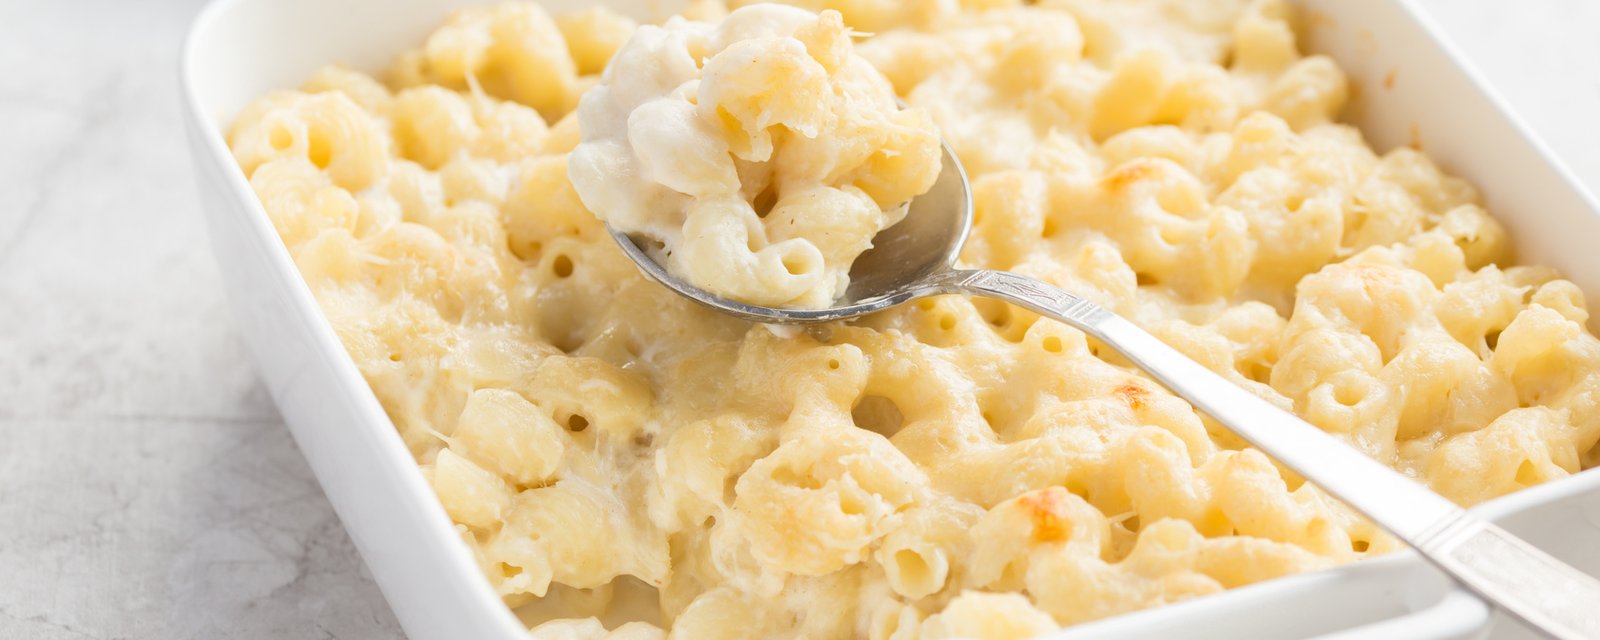 Macaroni au fromage au four, la recette maison qu'il faut absolument connaître